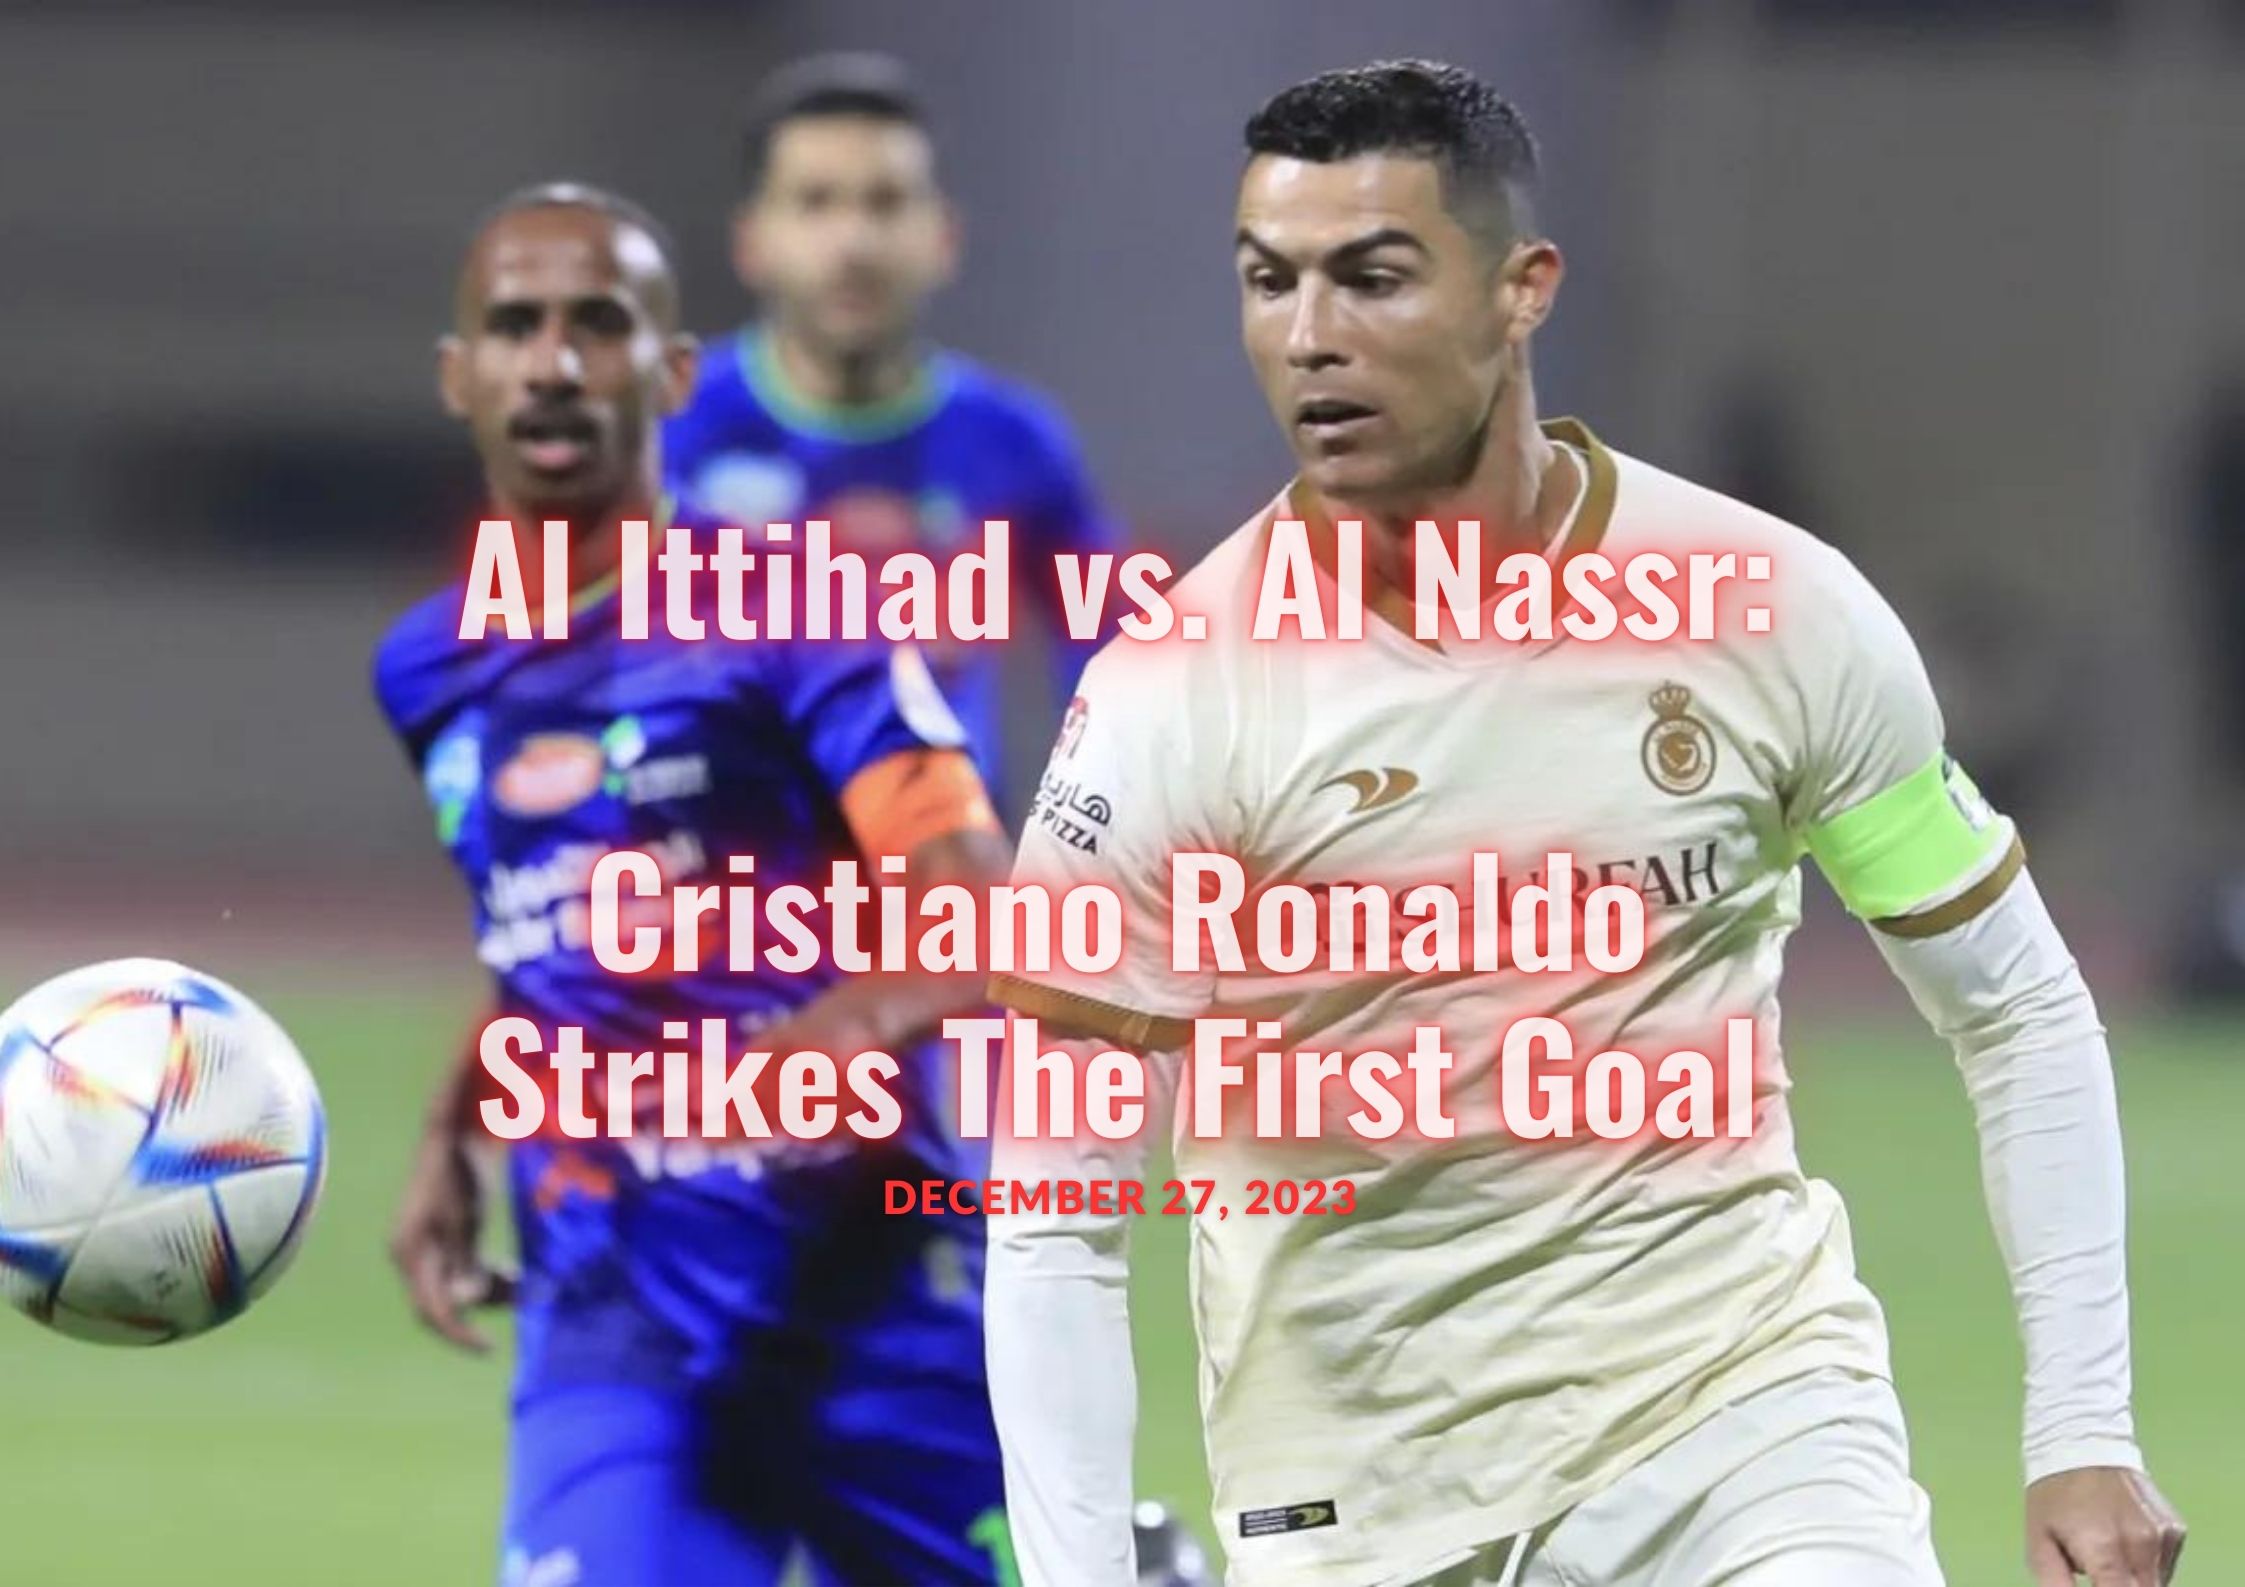 Al Ittihad vs. Al Nassr